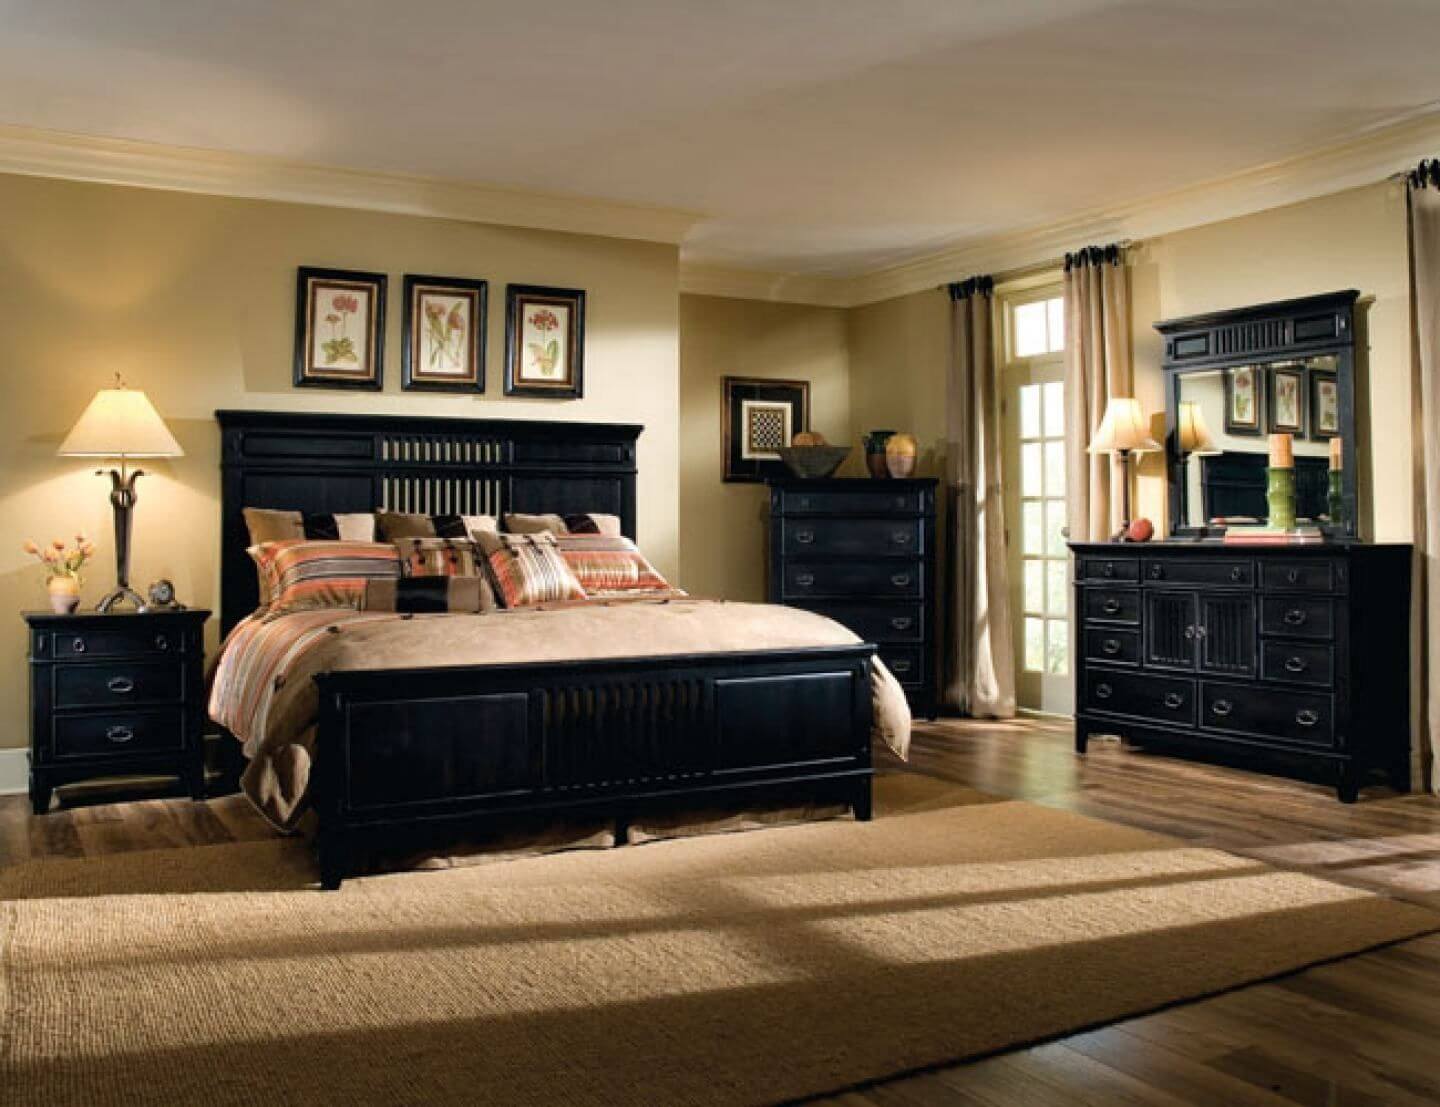 Черная деревянная мебель в интерьере спальни